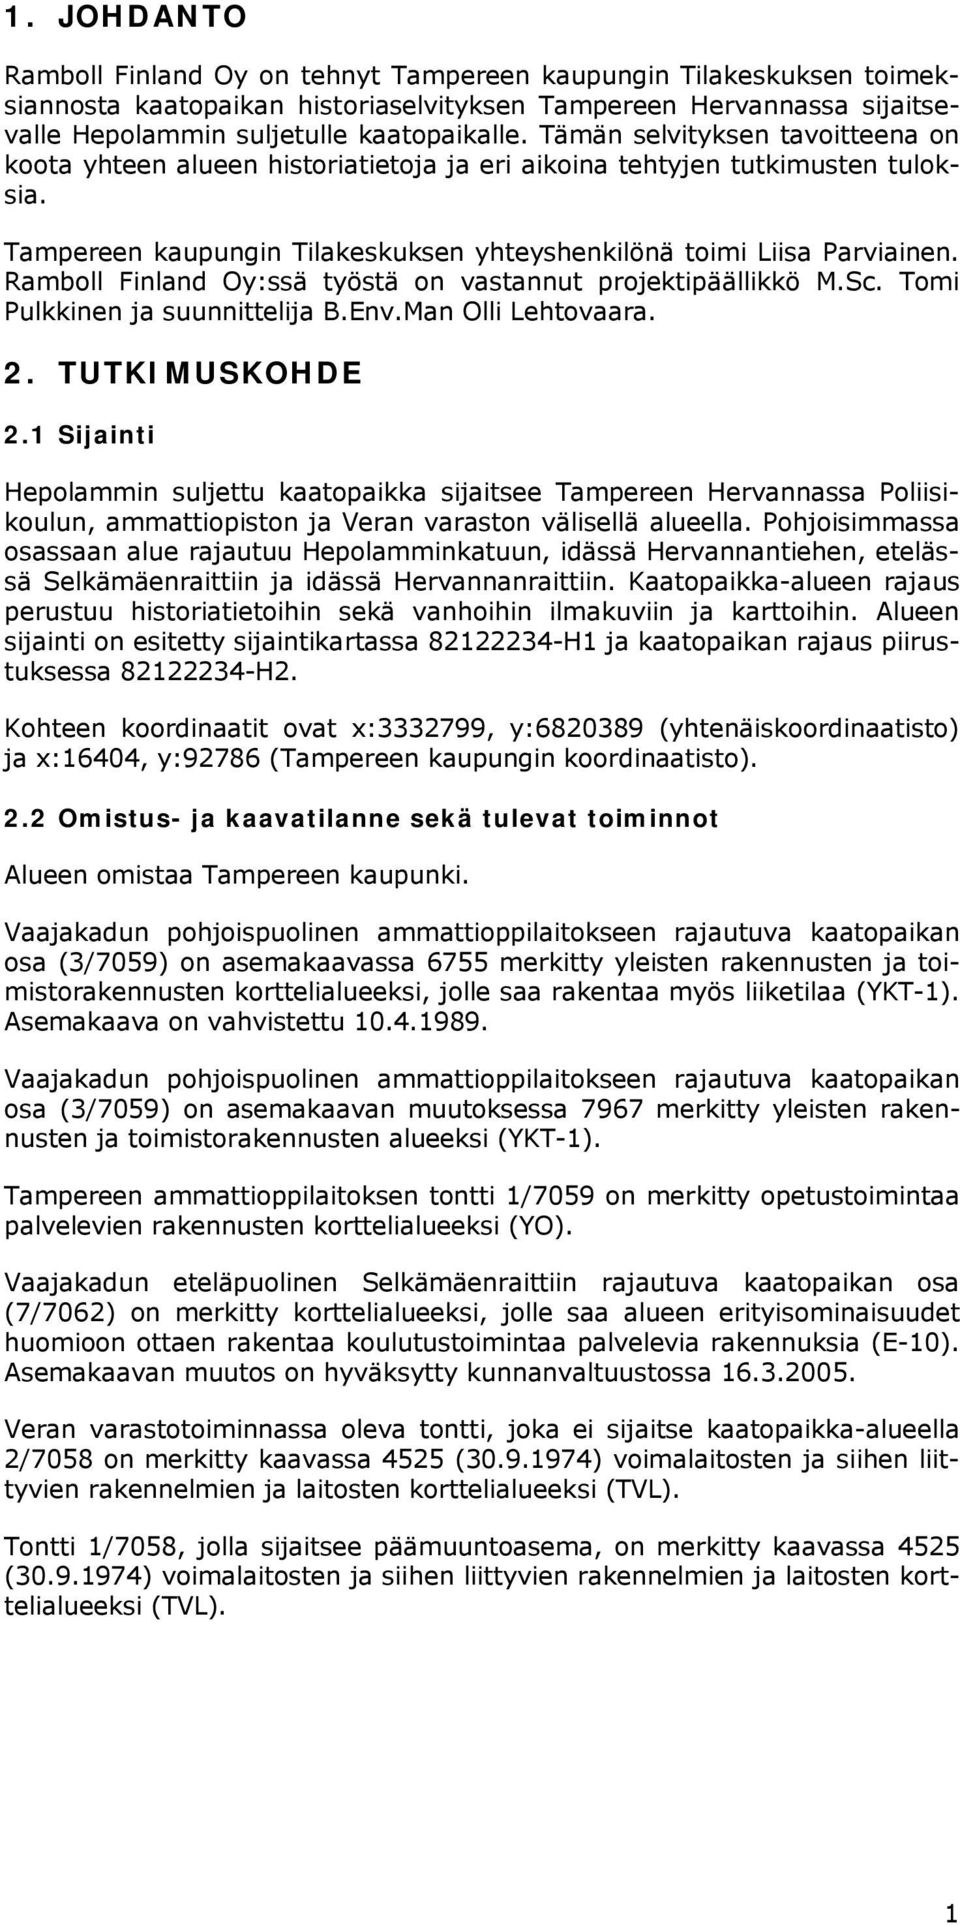 Ramboll Finland Oy:ssä työstä on vastannut projektipäällikkö M.Sc. Tomi Pulkkinen ja suunnittelija B.Env.Man Olli Lehtovaara. 2. TUTKIMUSKOHDE 2.